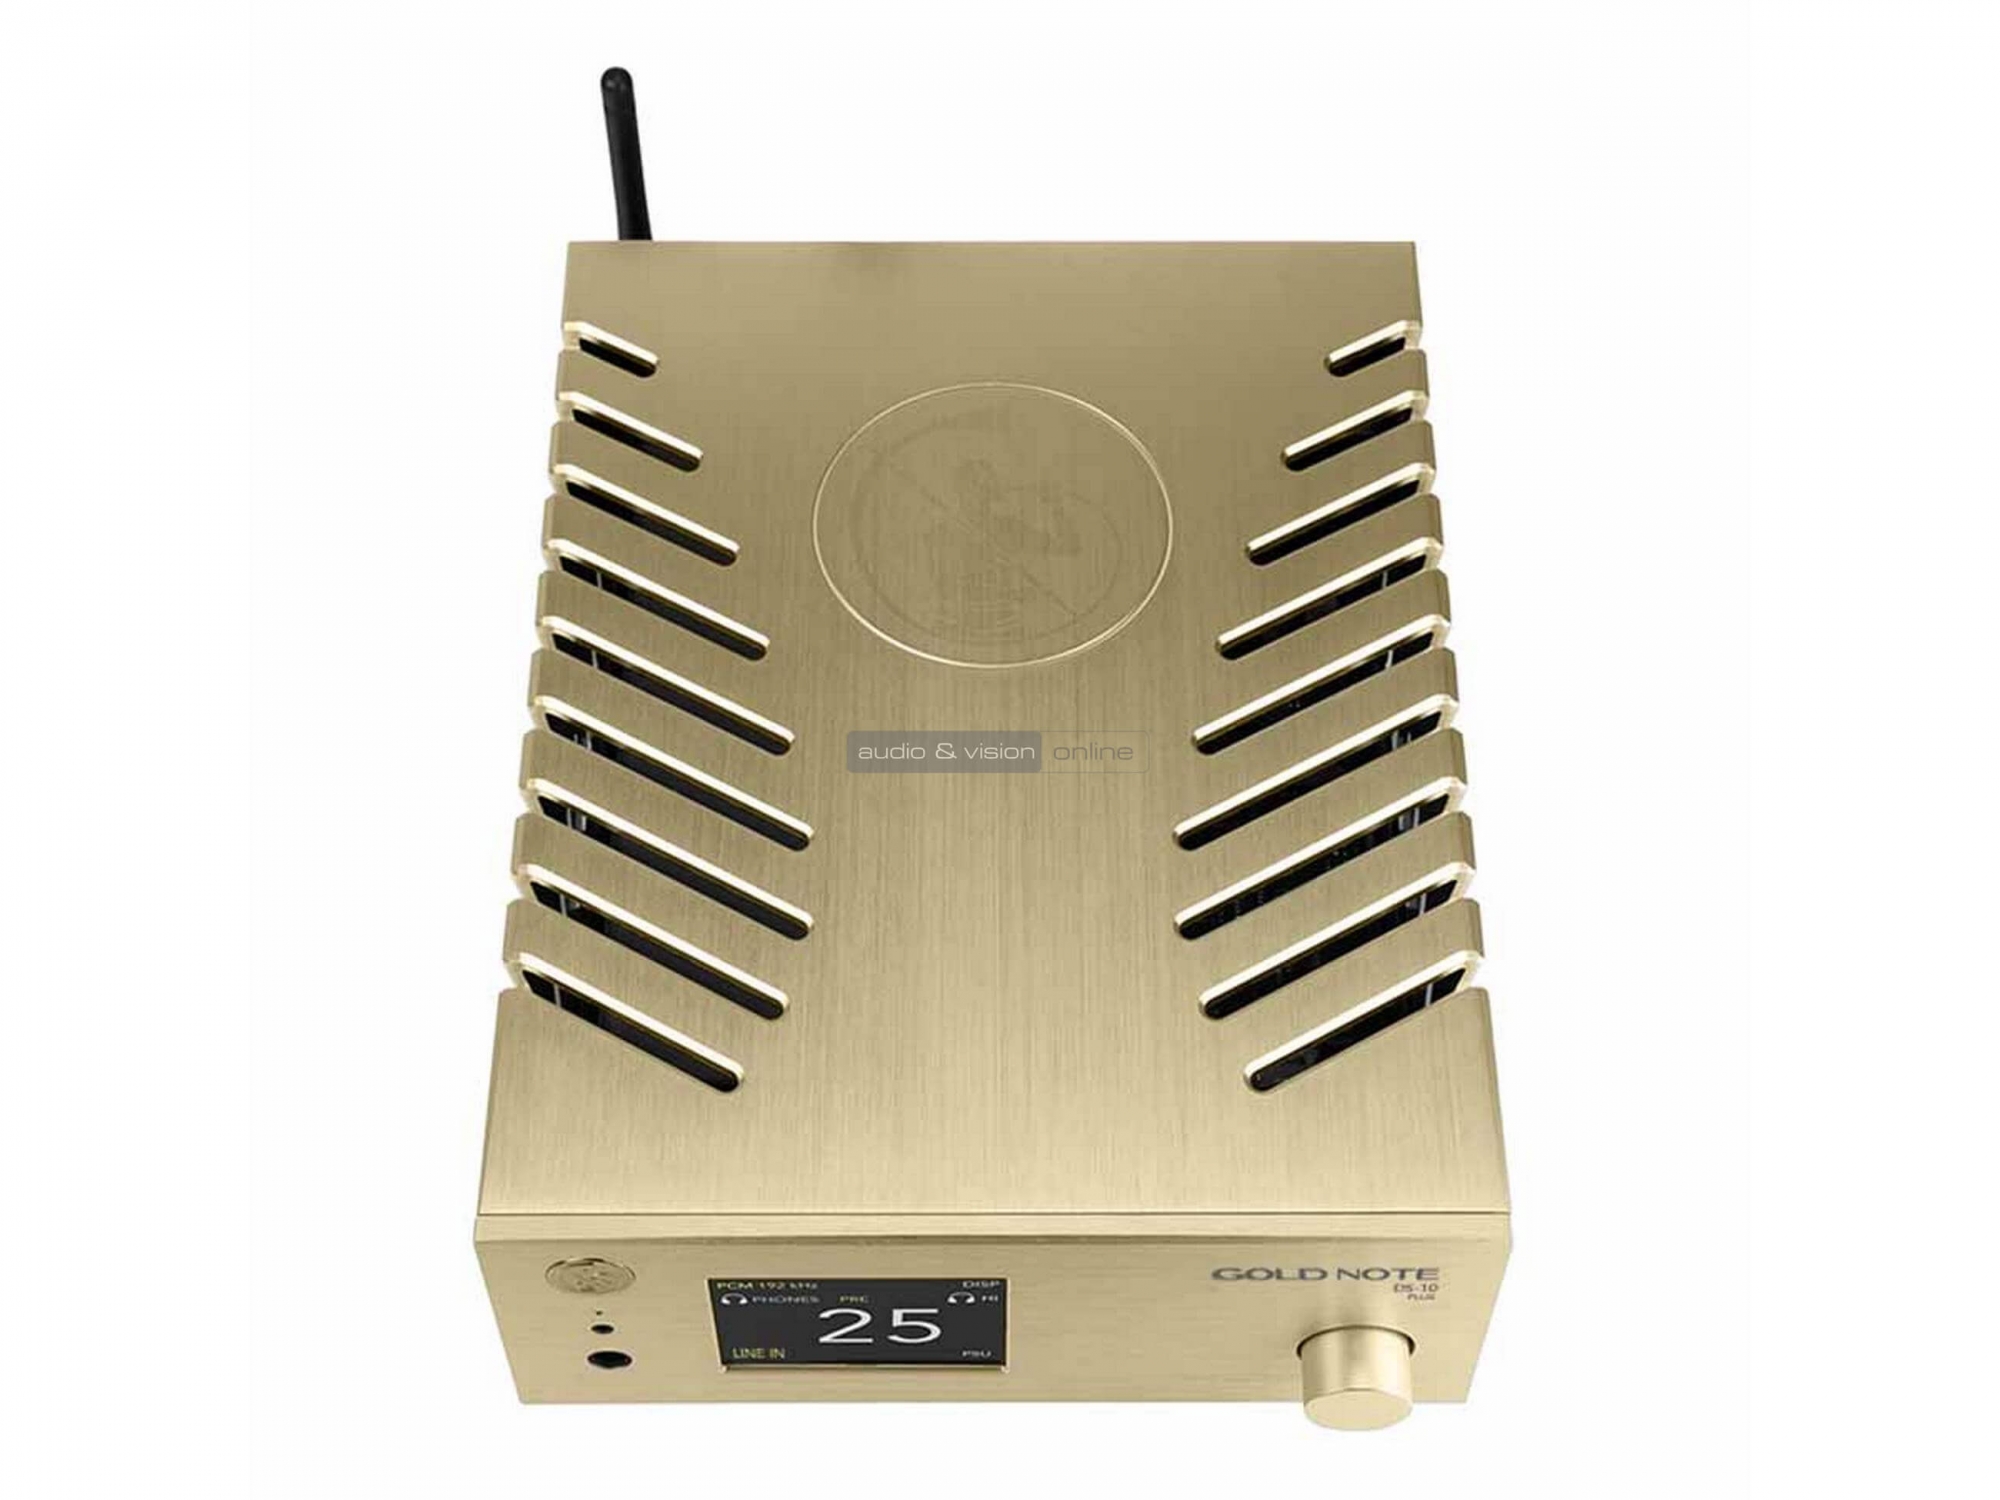 Gold Note DS-10 Plus hálózati streamer